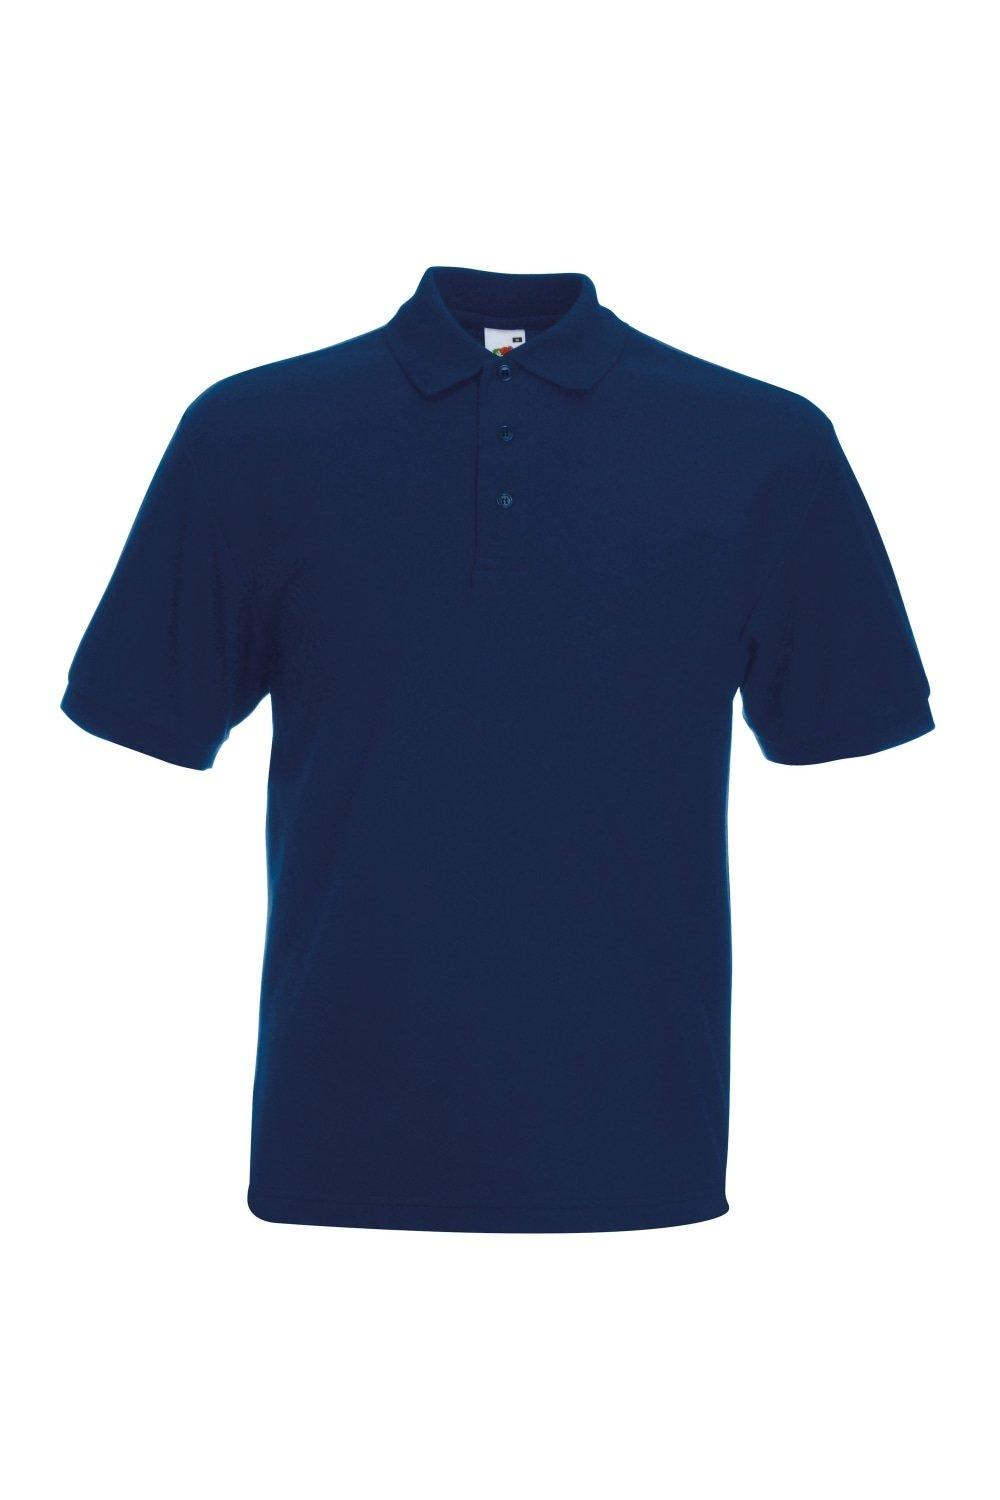 однотонная рубашка поло из тяжелого пике с заклепками premier синий Рубашка поло с короткими рукавами из тяжелого пике 65/35 Fruit of the Loom, темно-синий